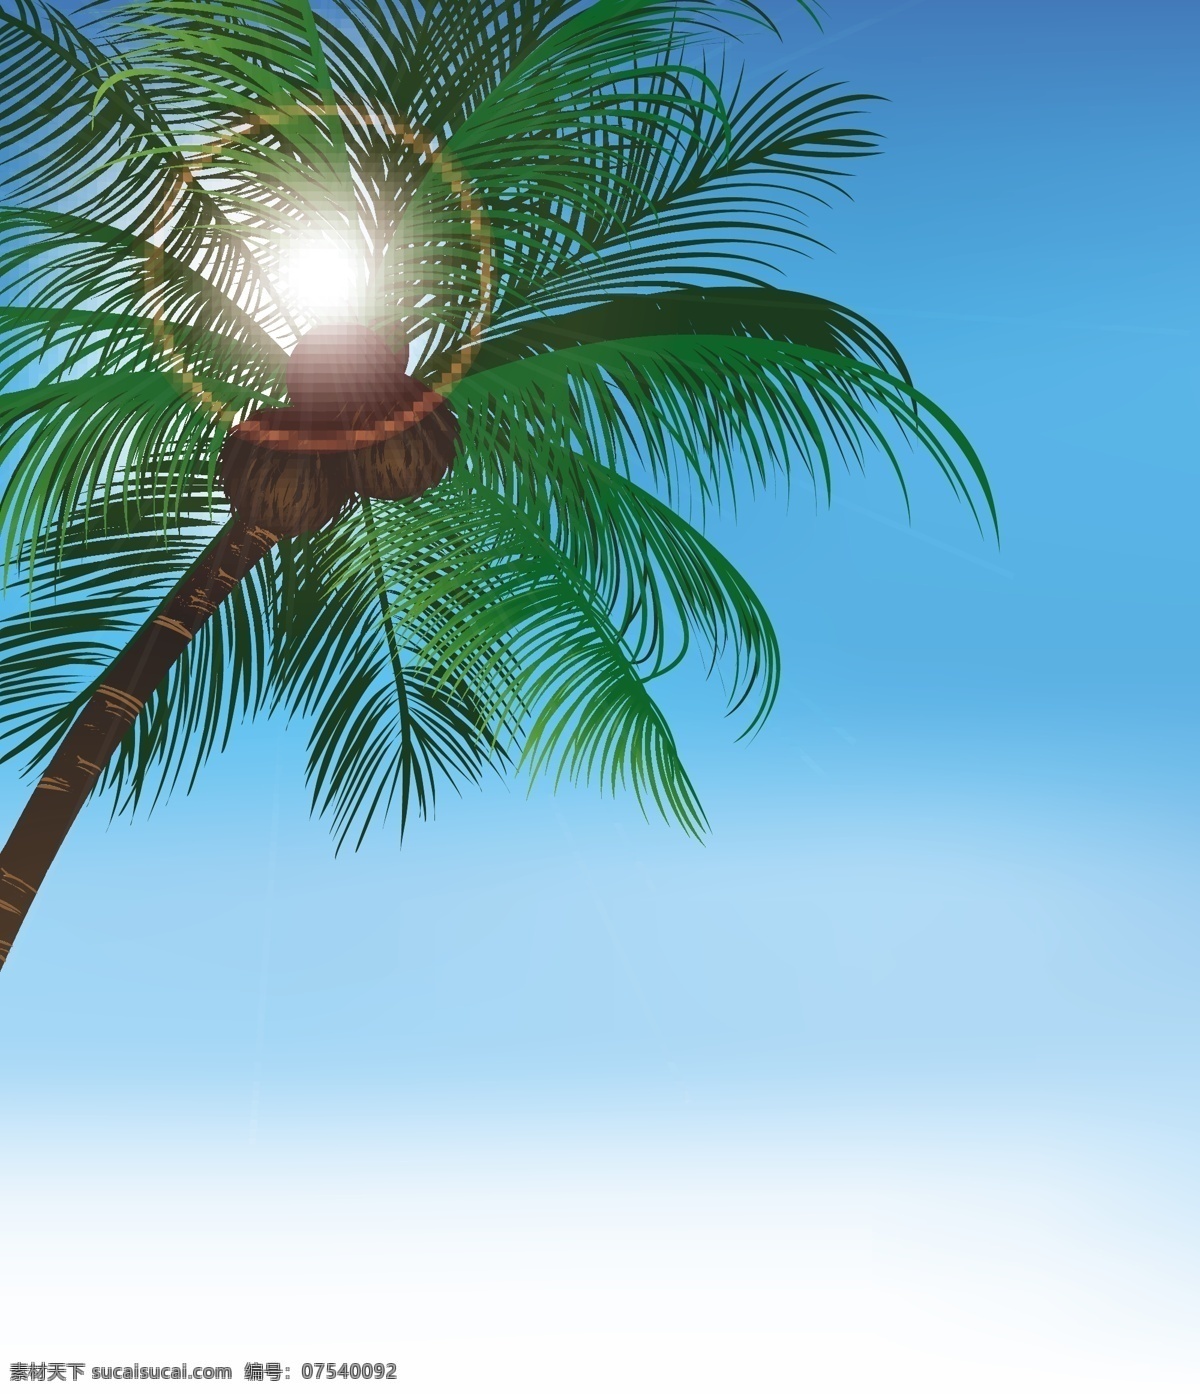 椰子 树上 椰果 矢量 椰子树 绿叶 椰子果 果实 蓝天 矢量素材 自然风光 空间环境 青色 天蓝色